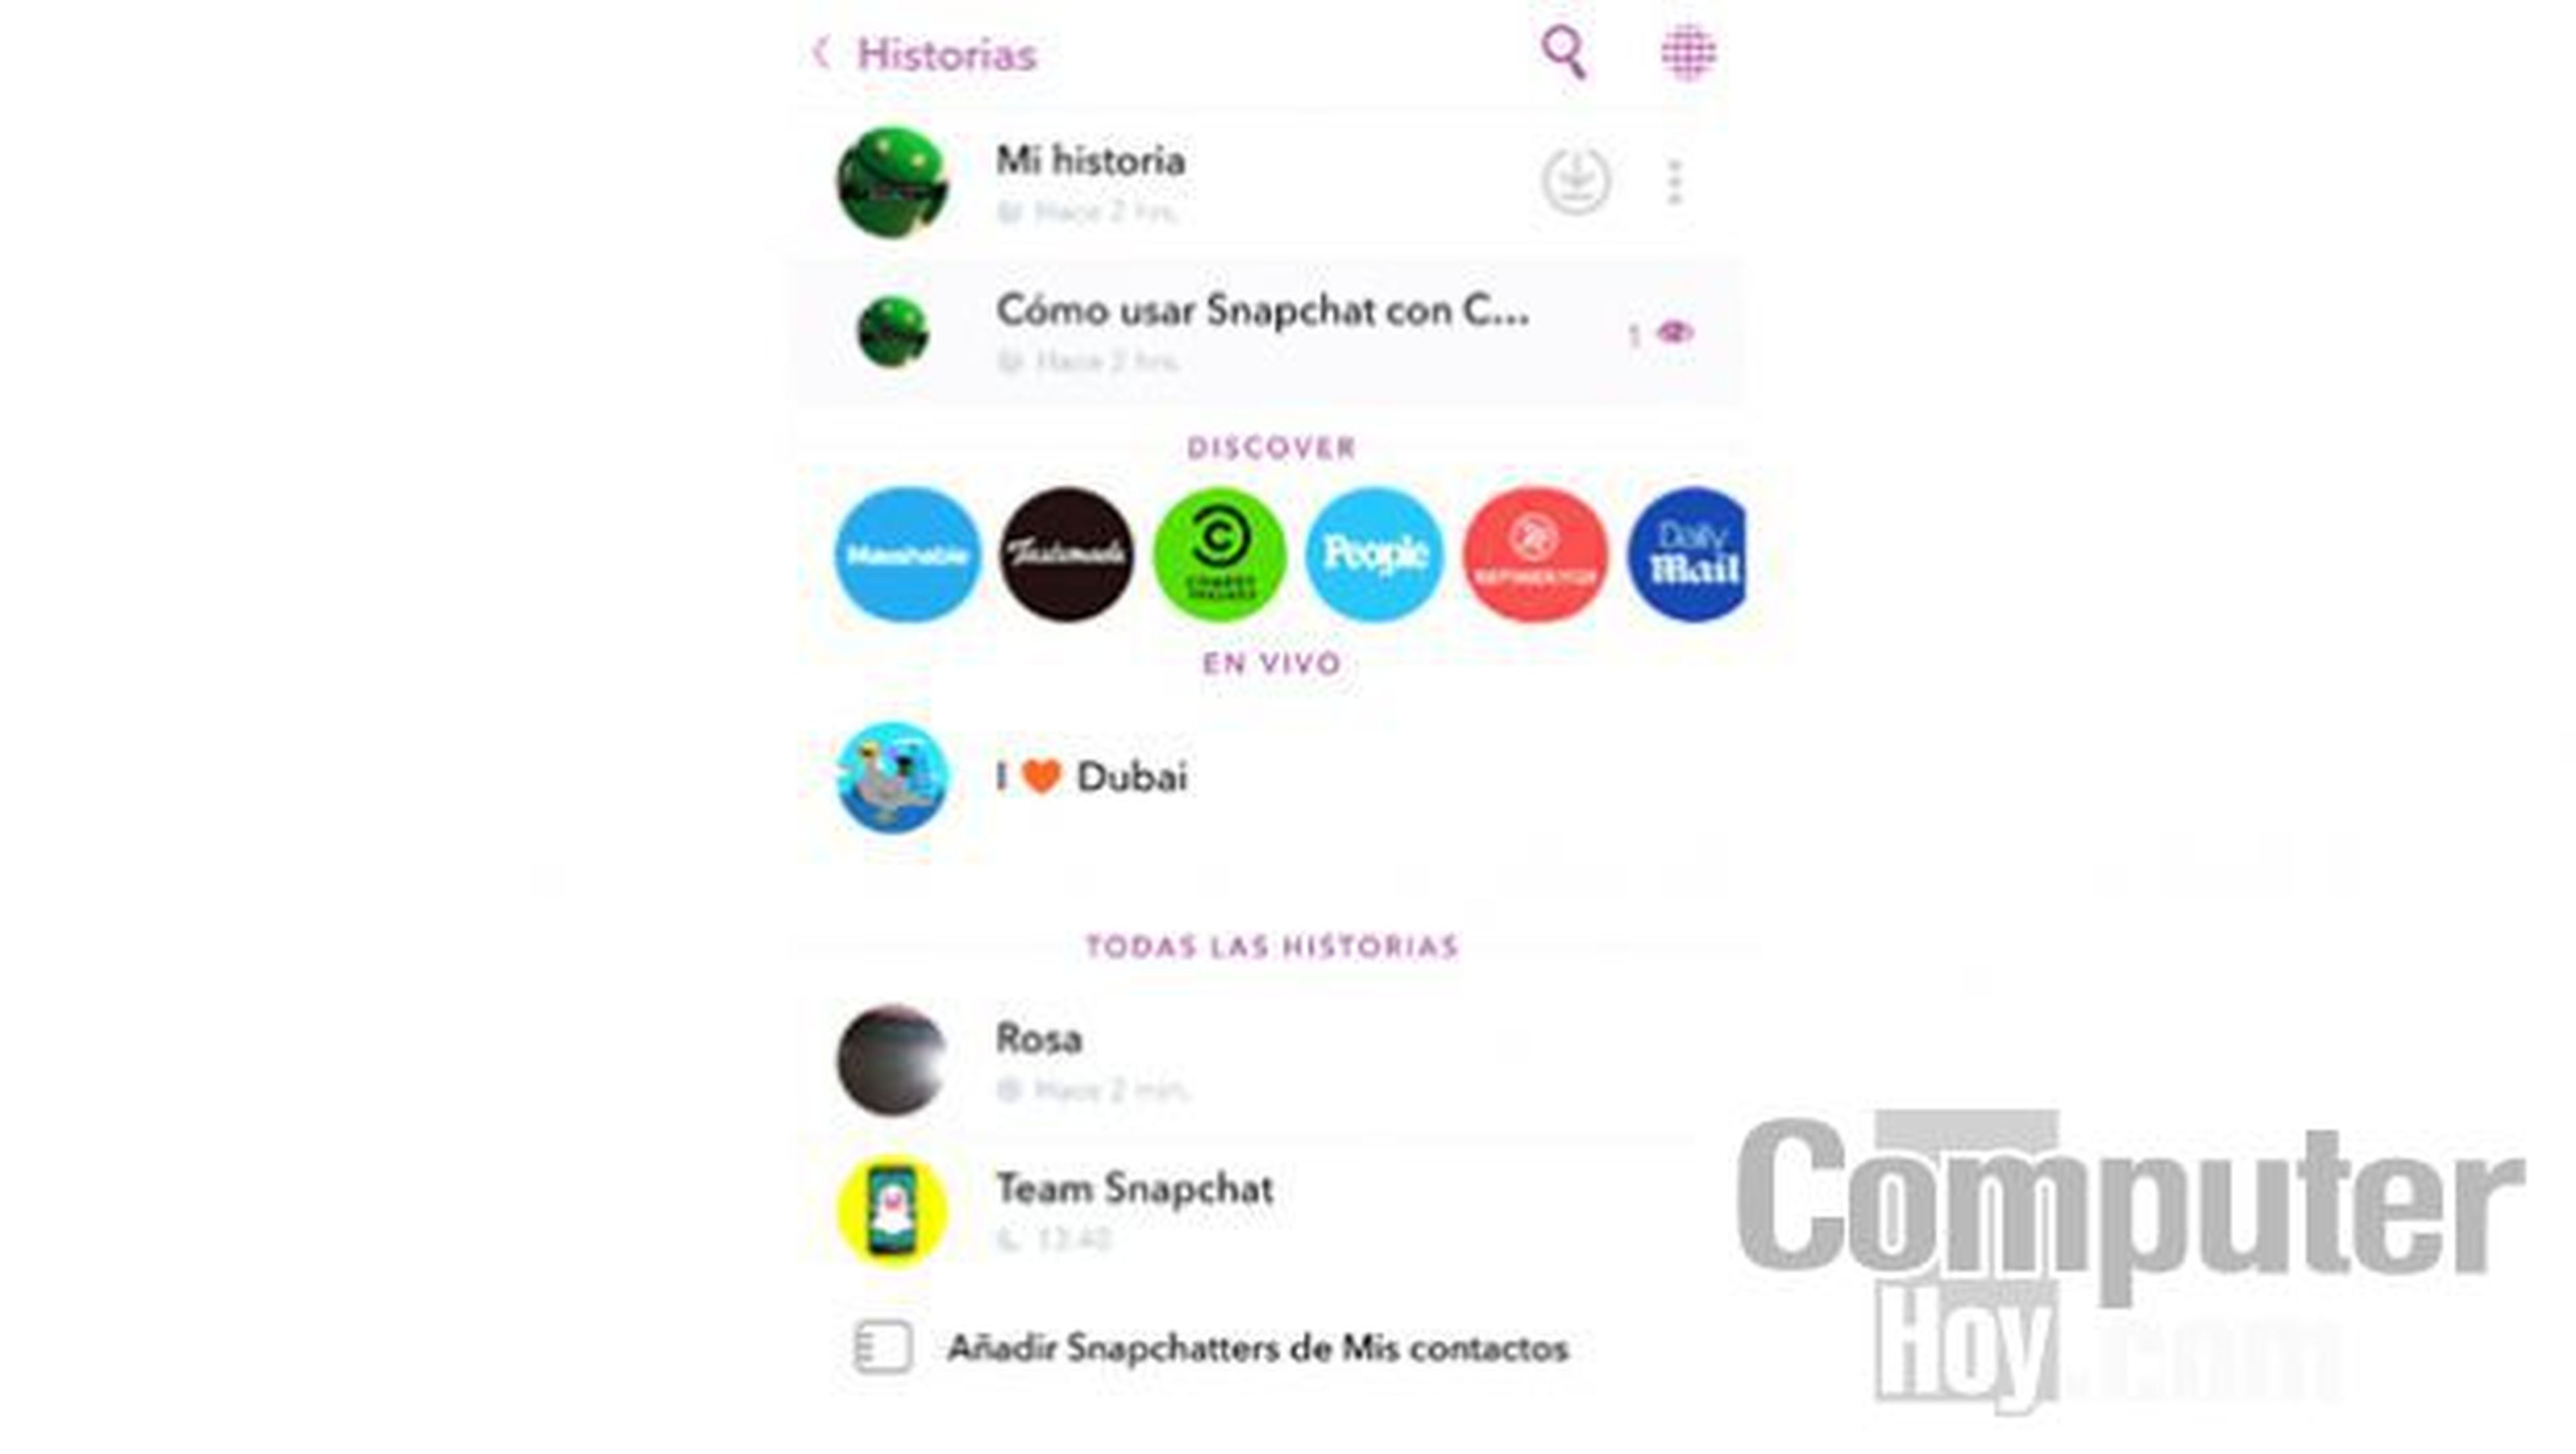 En esta pantalla verás las historias recientes de tus amigos, tus propias historias o acceder a las de los canales de empresas que están presentes en Snapchat.